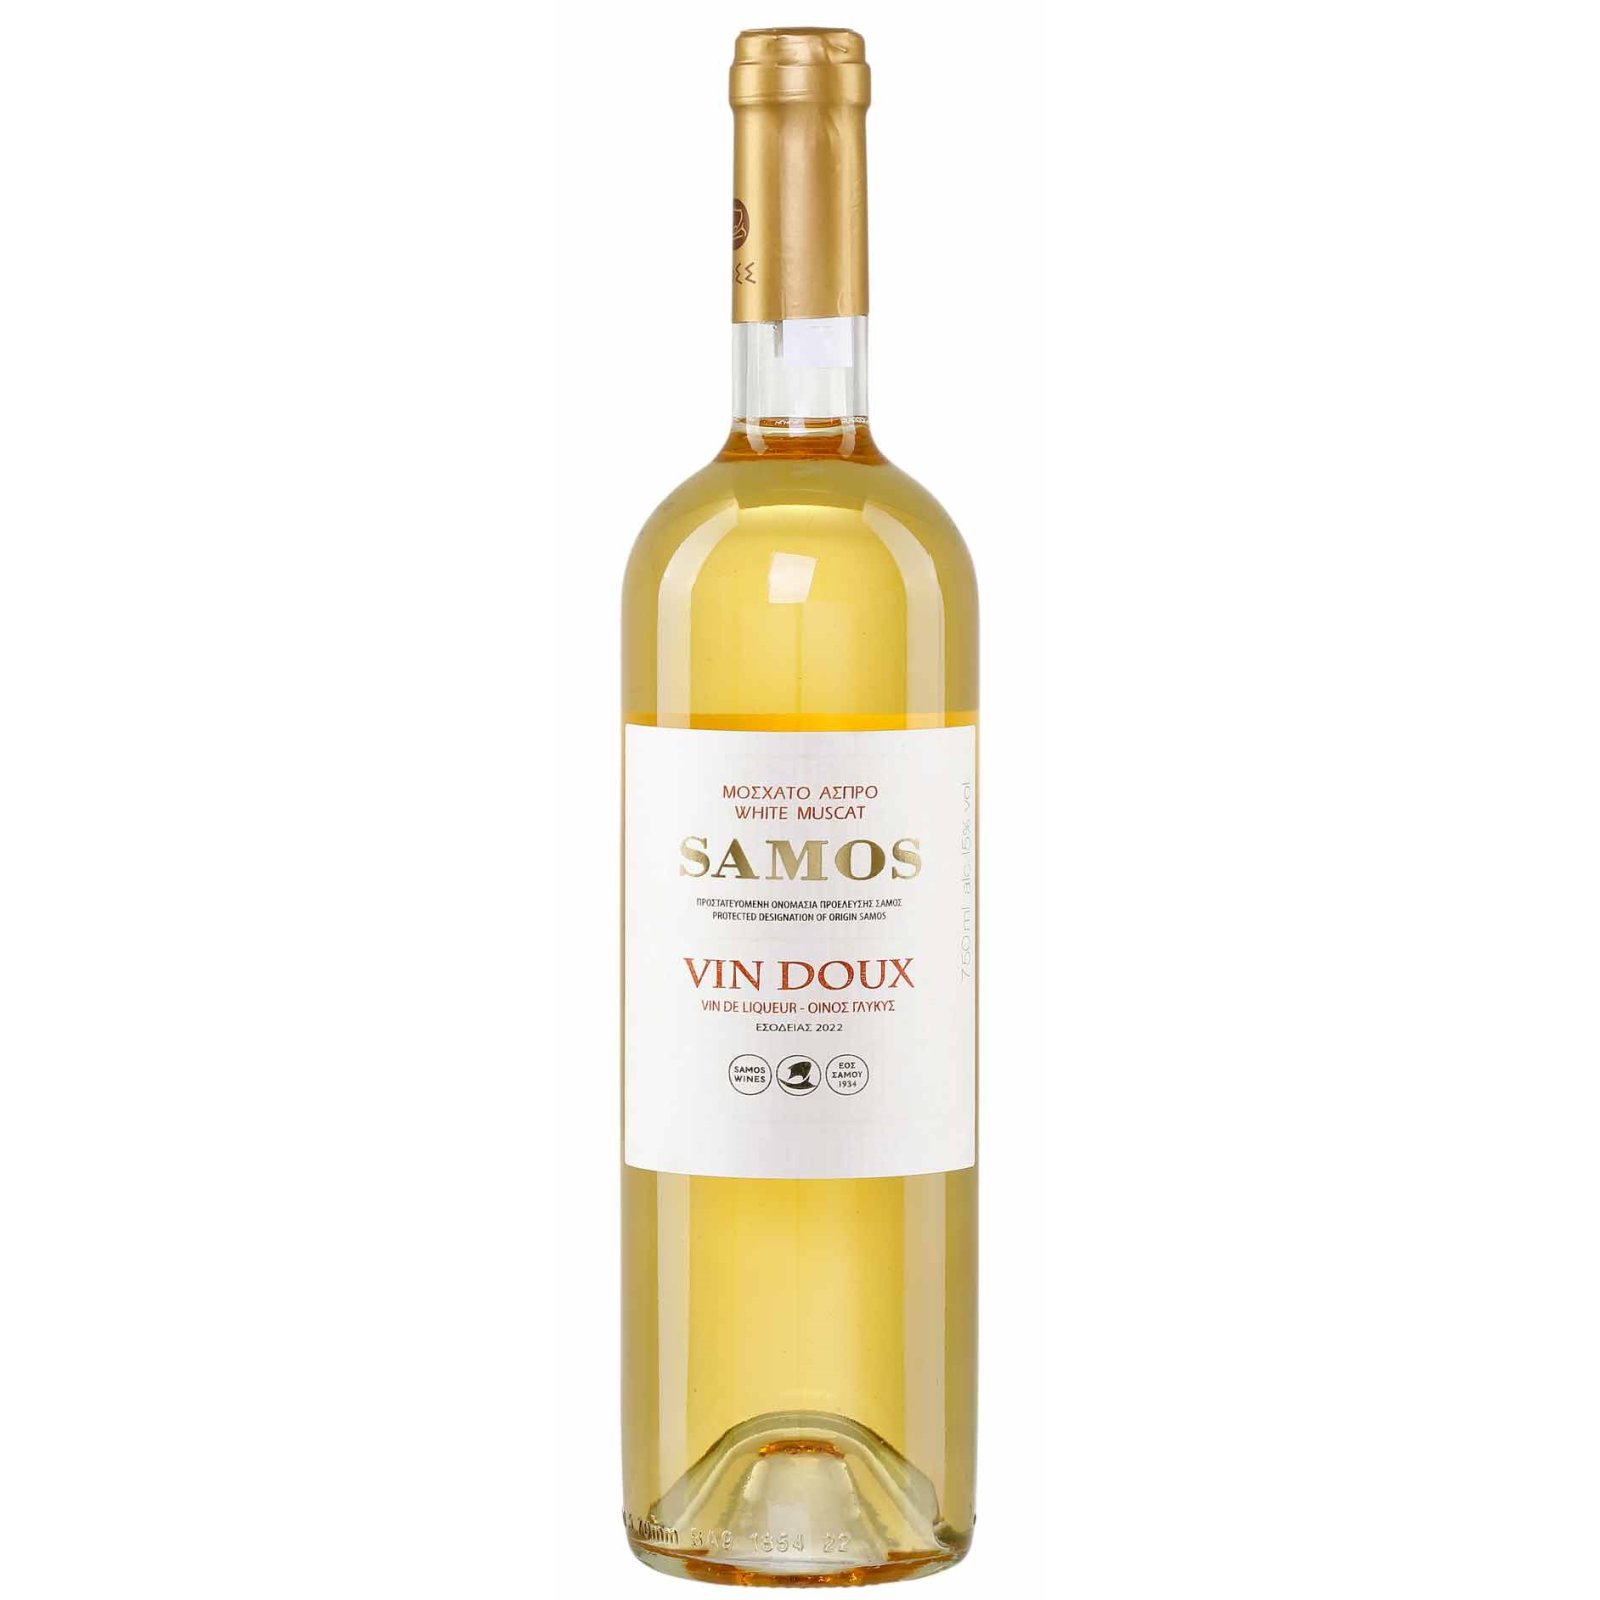 Jassas 9,29 0,75l Doux Samos (Samos Vin kaufen, bei Wein) €